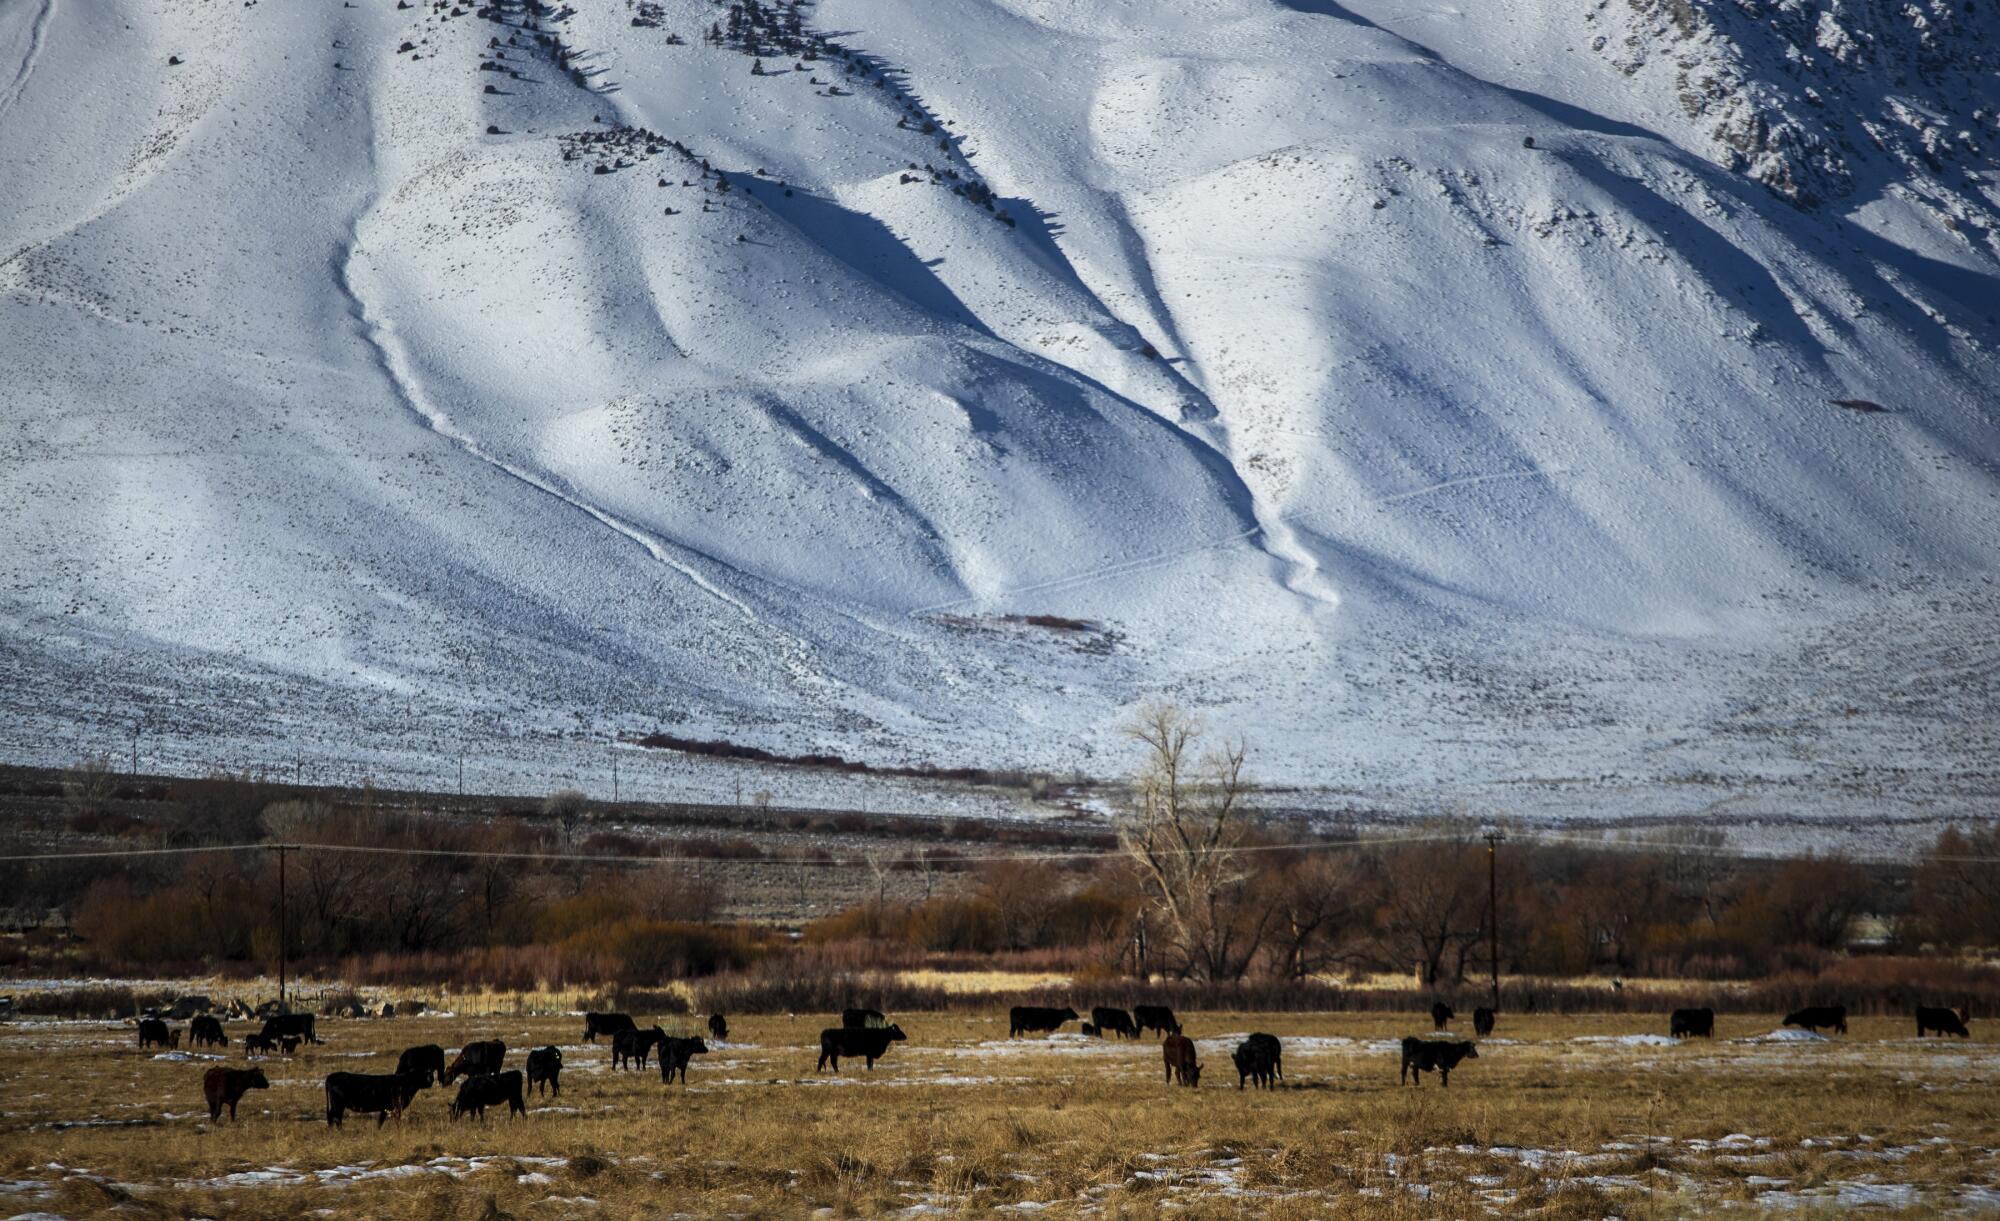 Cattle graze near a snowy mountain